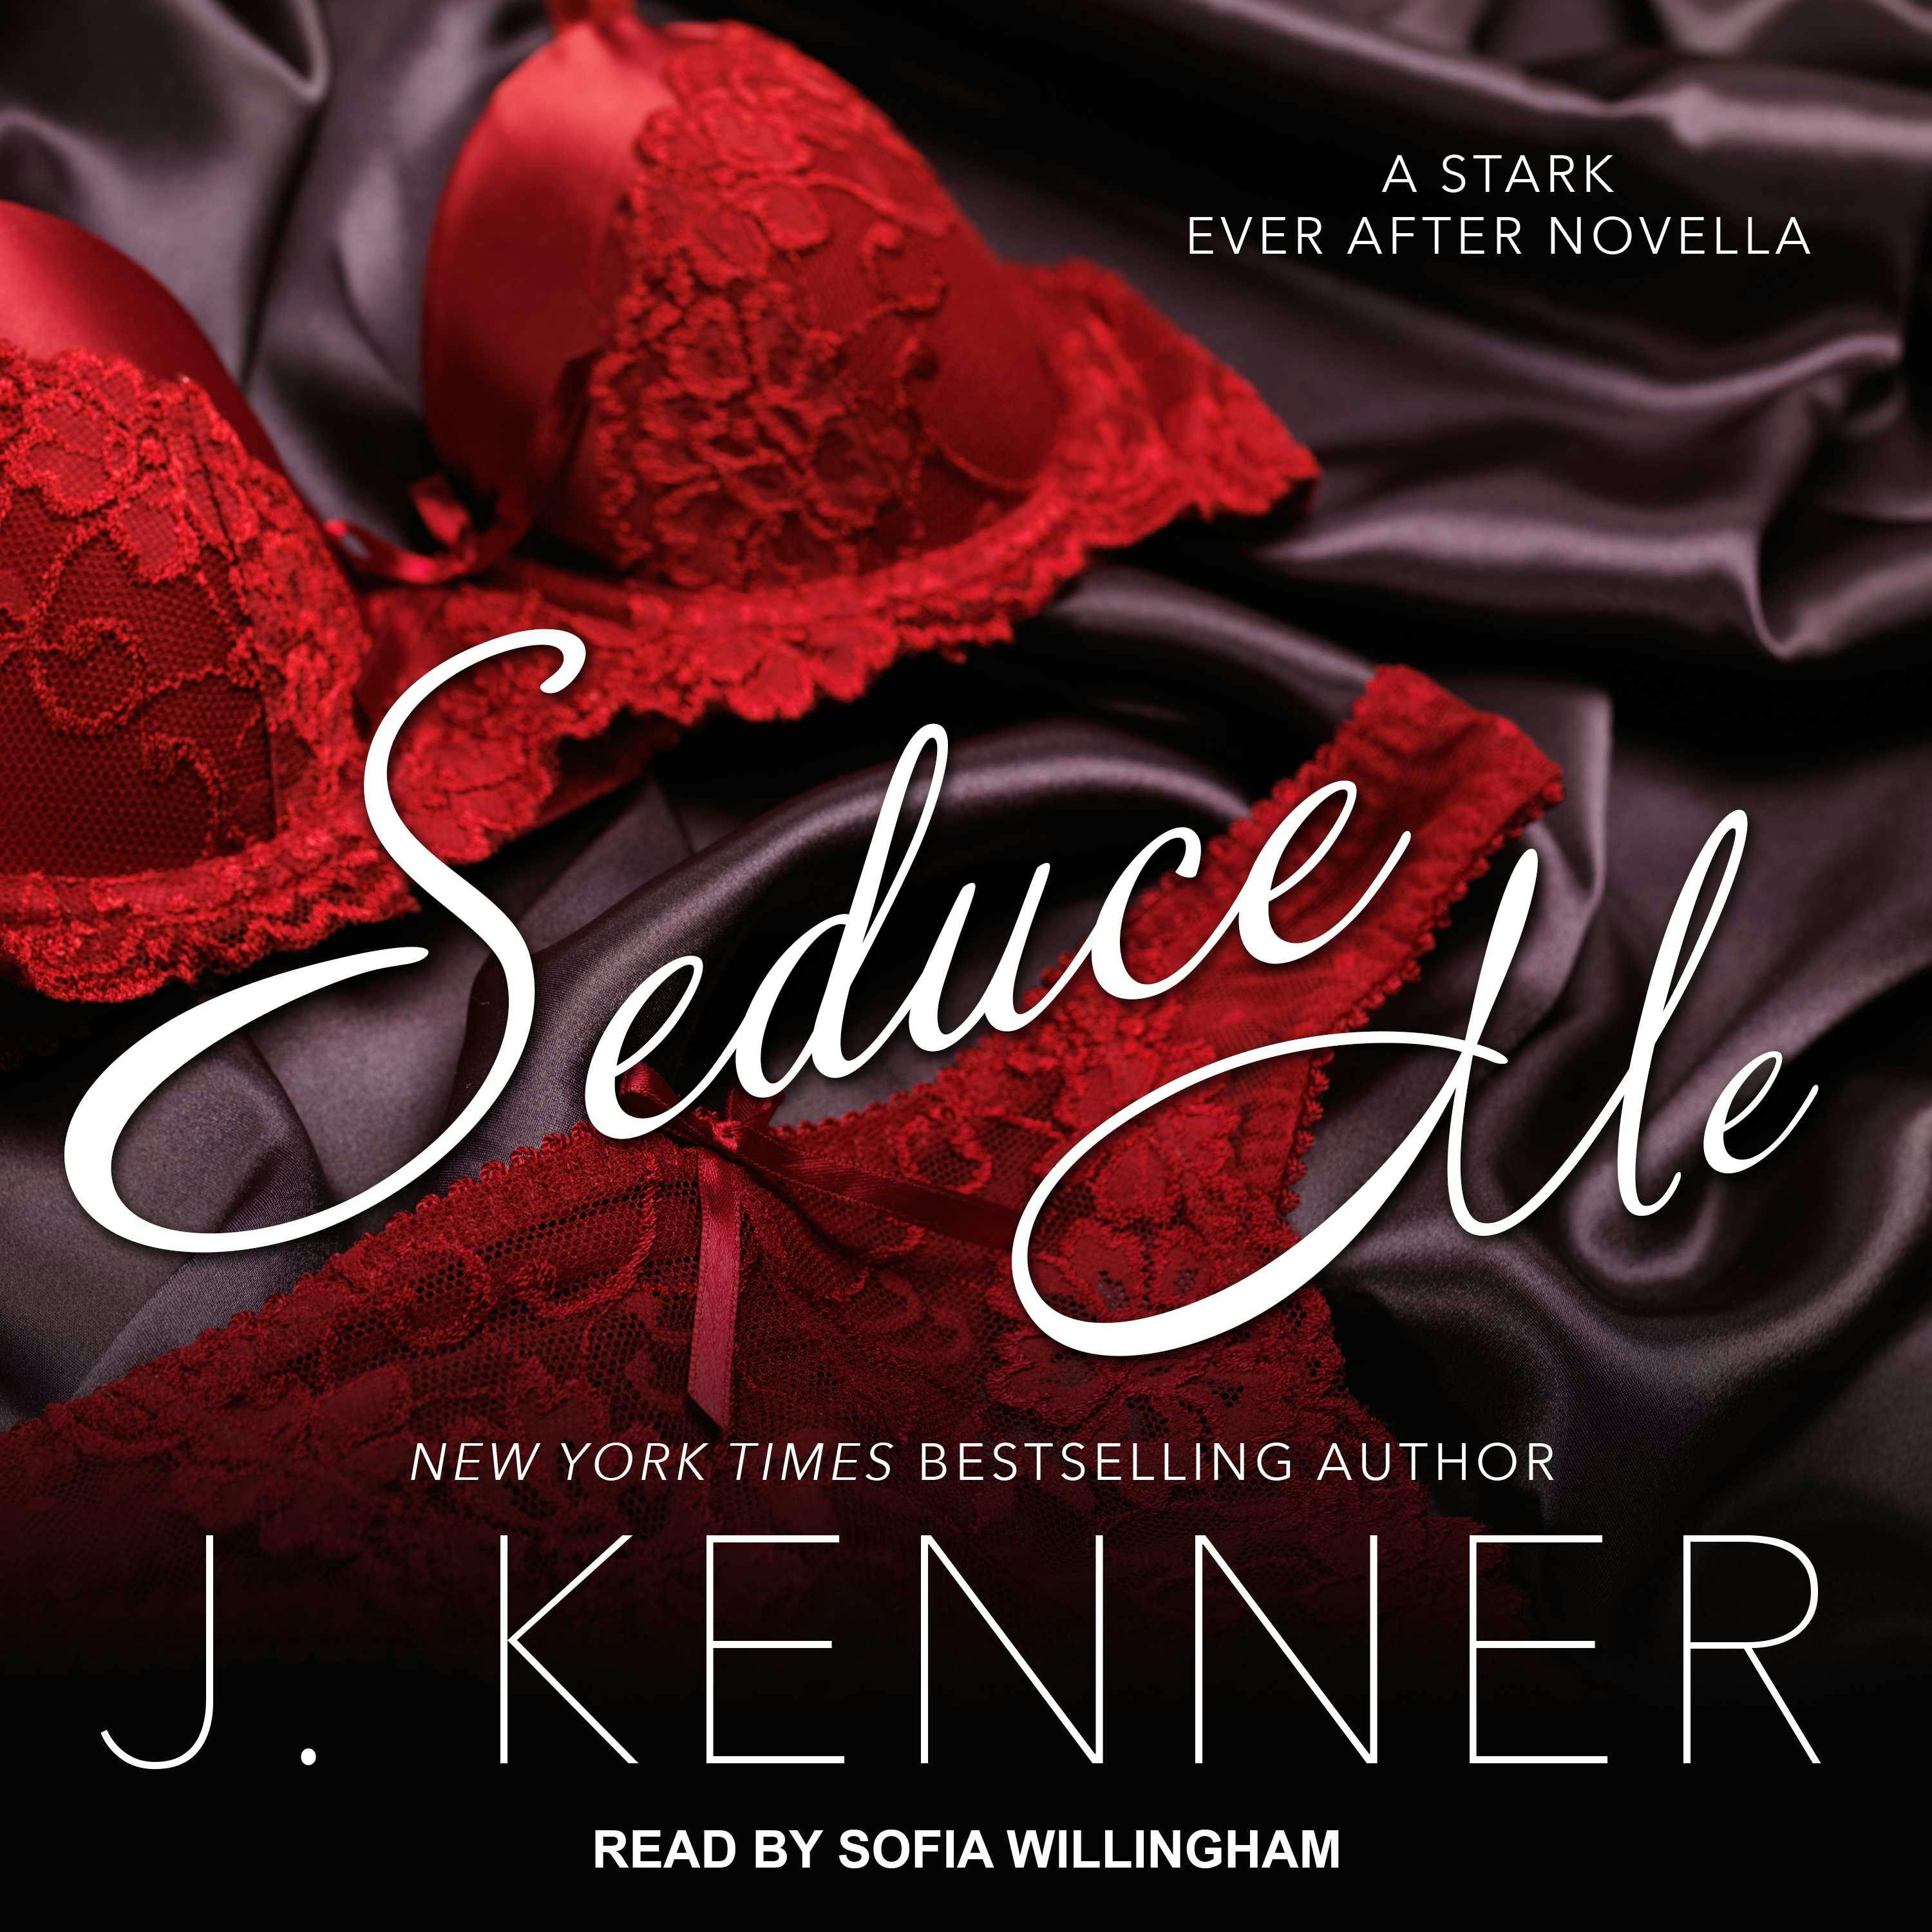 Seduce Me: A Stark Ever After Novella - J. Kenner